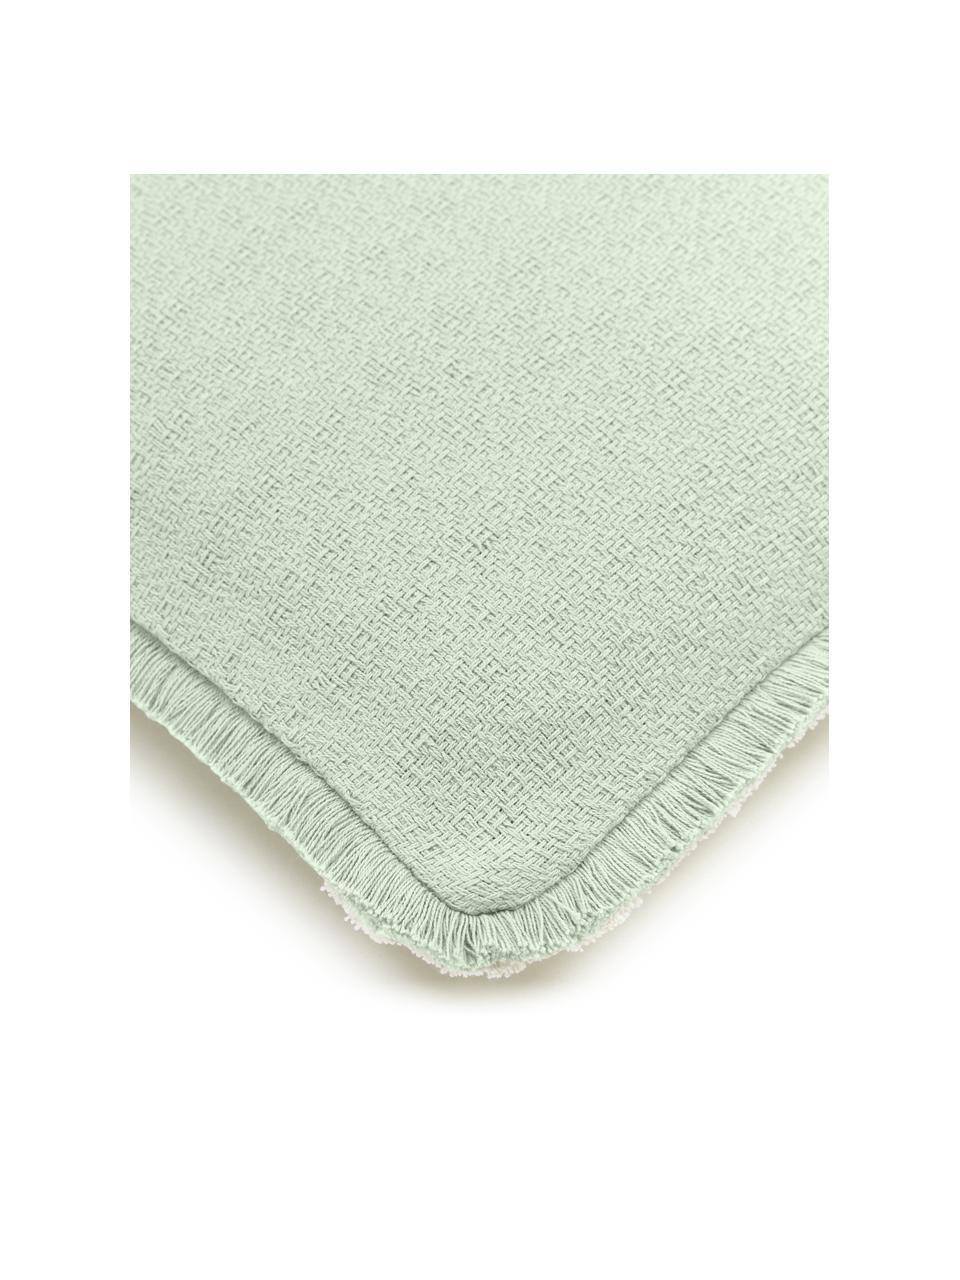 Oboustranný povlak na polštář s třásněmi Loran, 100 % bavlna, Zelená, Š 30 cm, D 50 cm